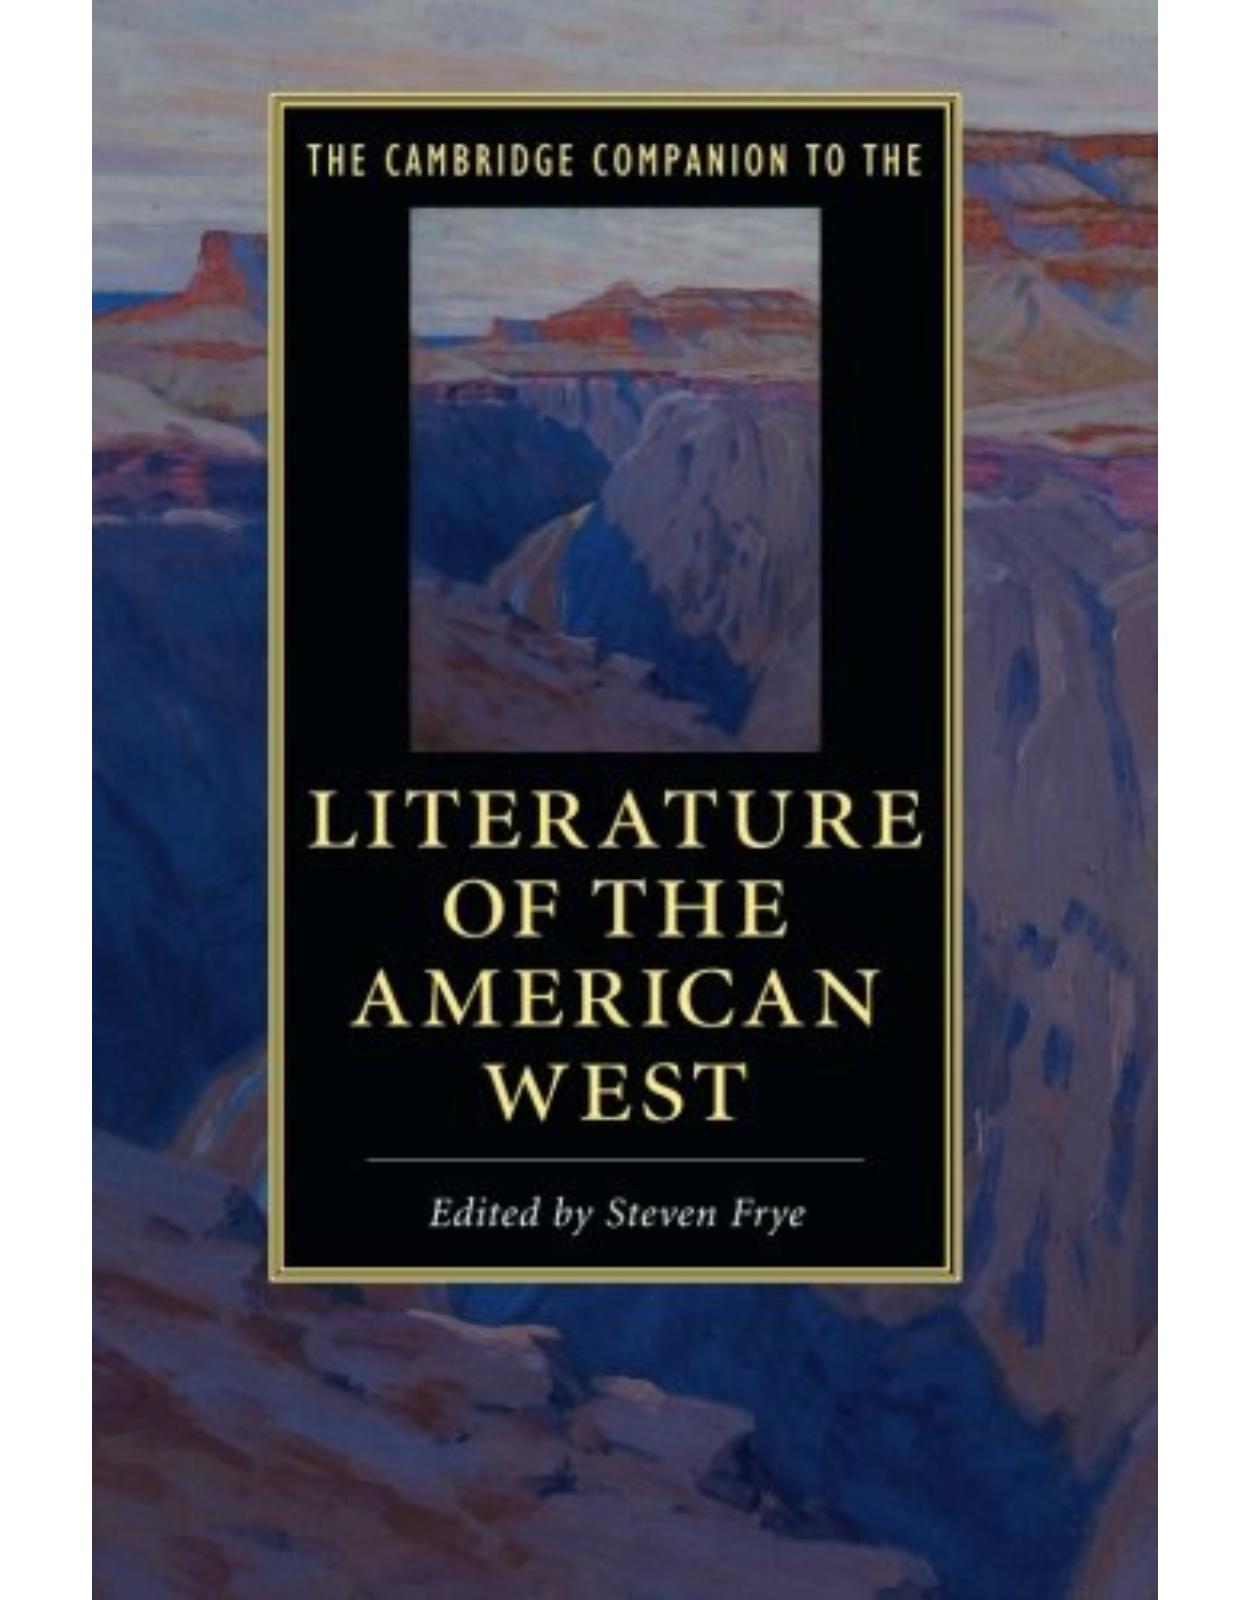 The Cambridge Companion to the Literature of the American West (Cambridge Companions to Literature)